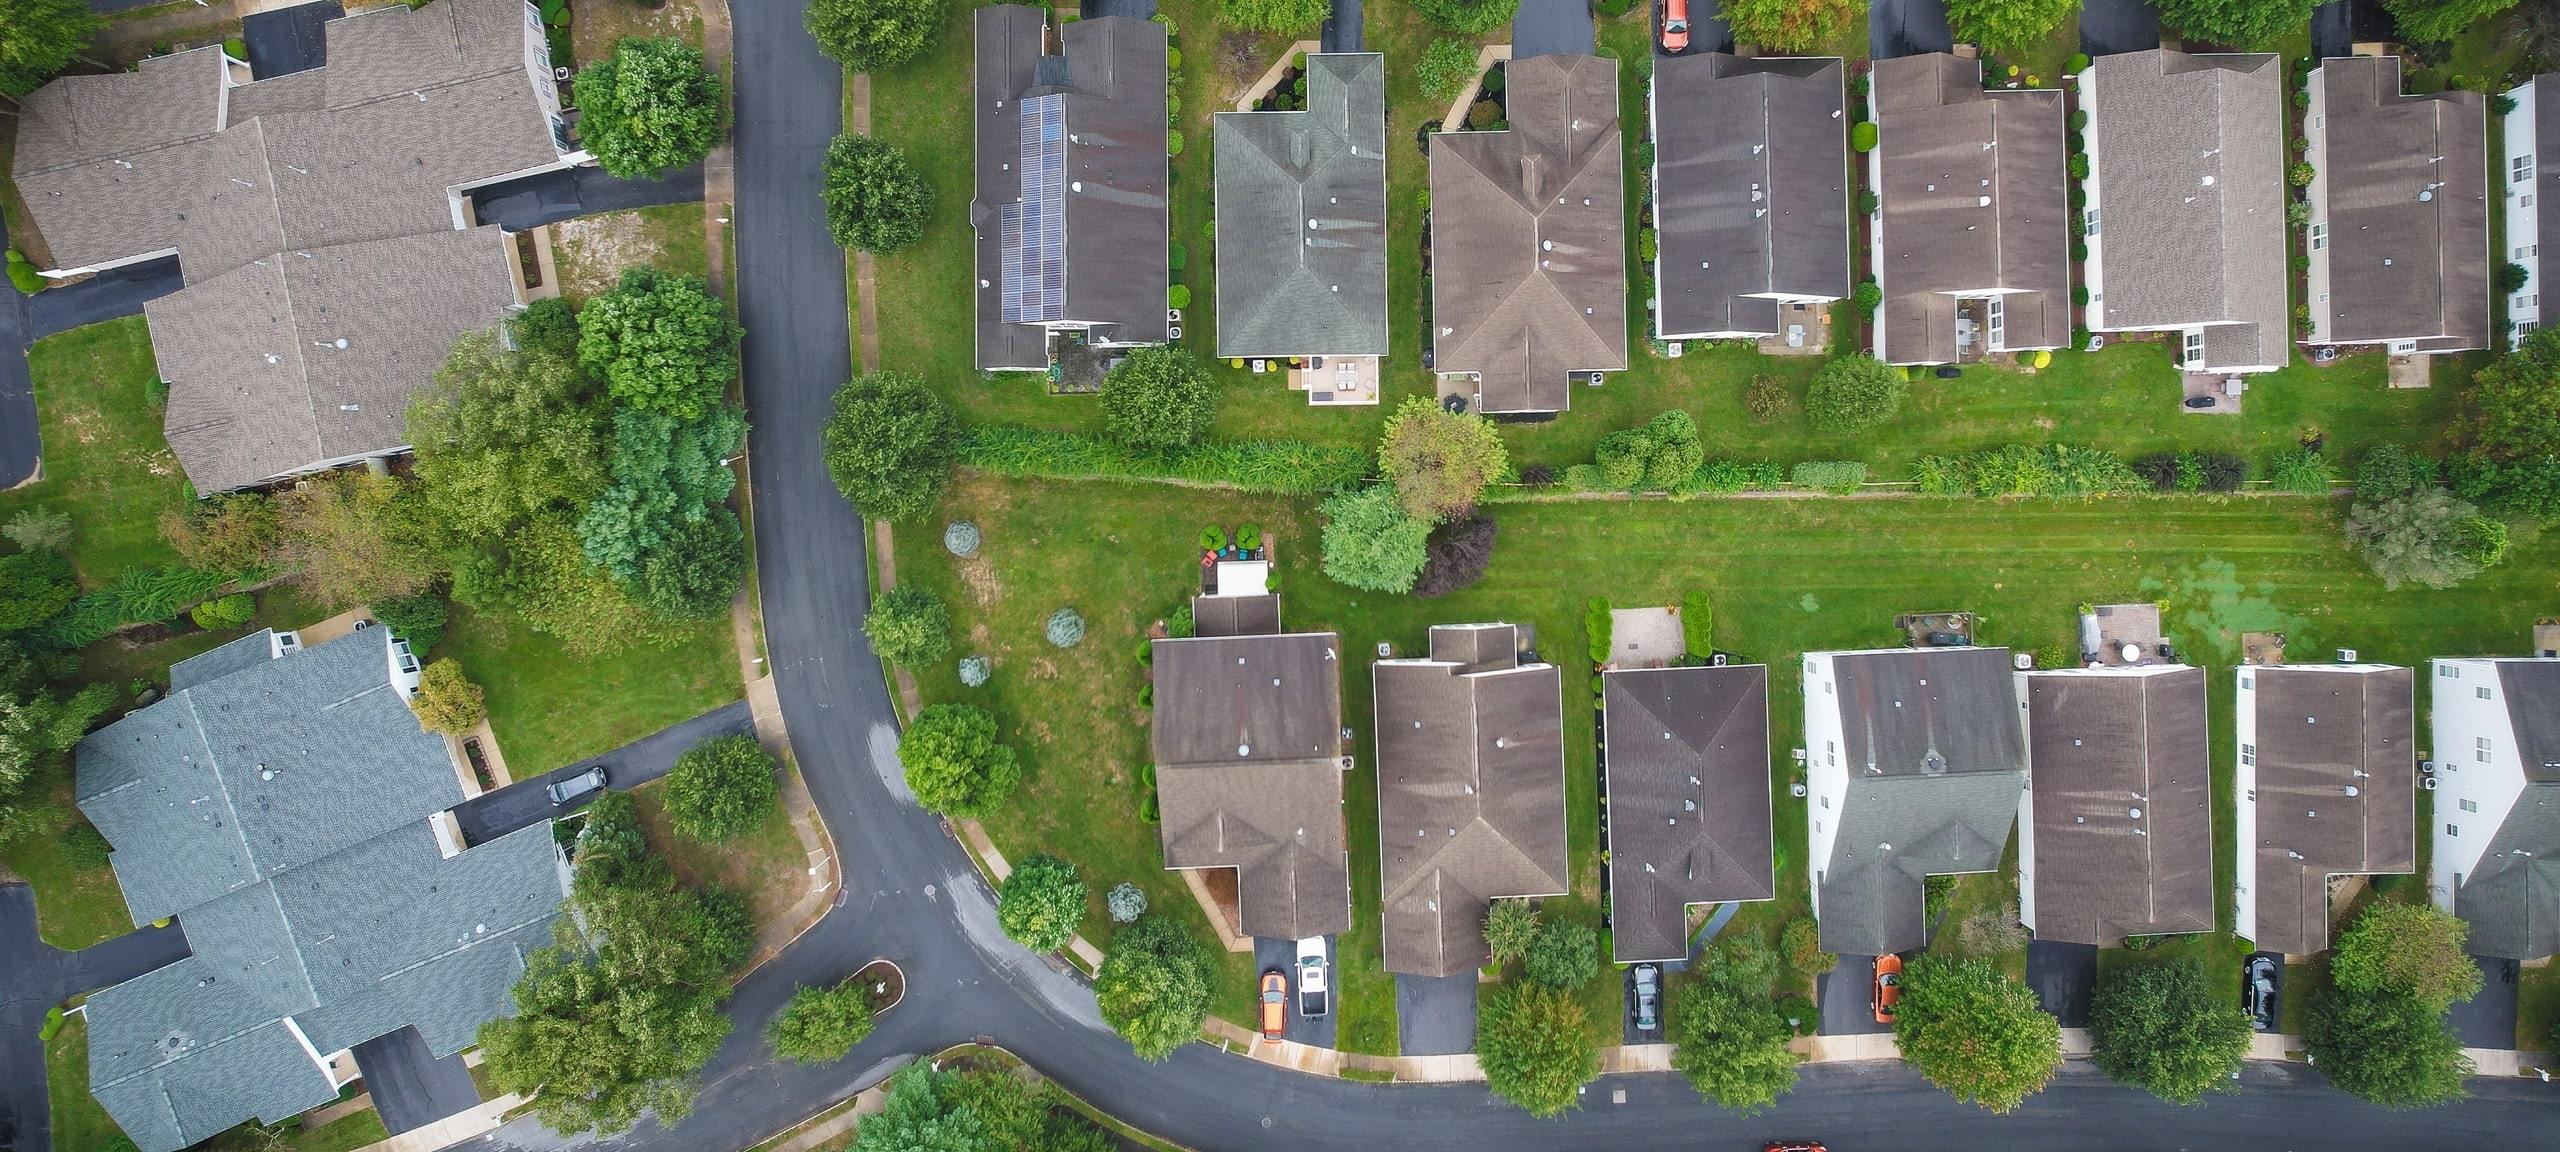 Aerial view of Lakewood, NJ residential street